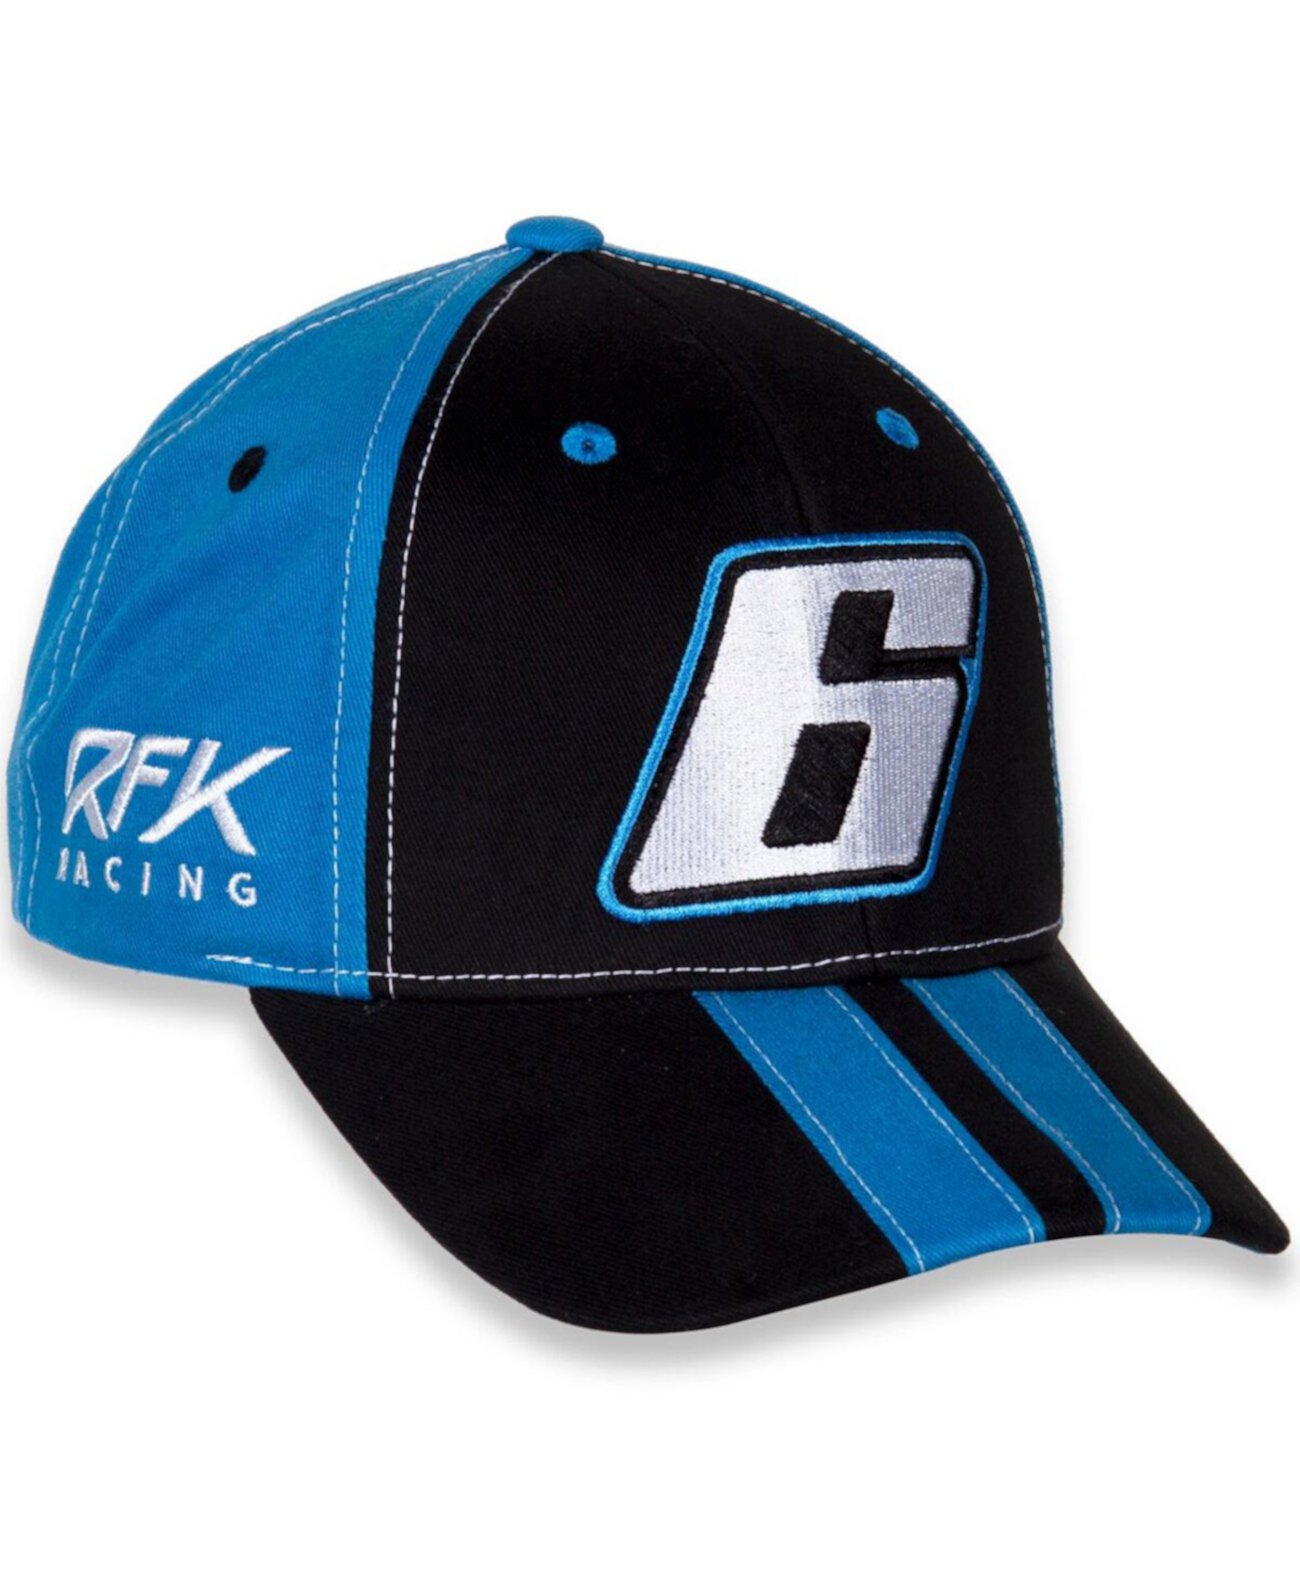 Молодежная кепка Brad Keselowski Big Number Adjustable Black, Blue для мальчиков и девочек Rfk Racing